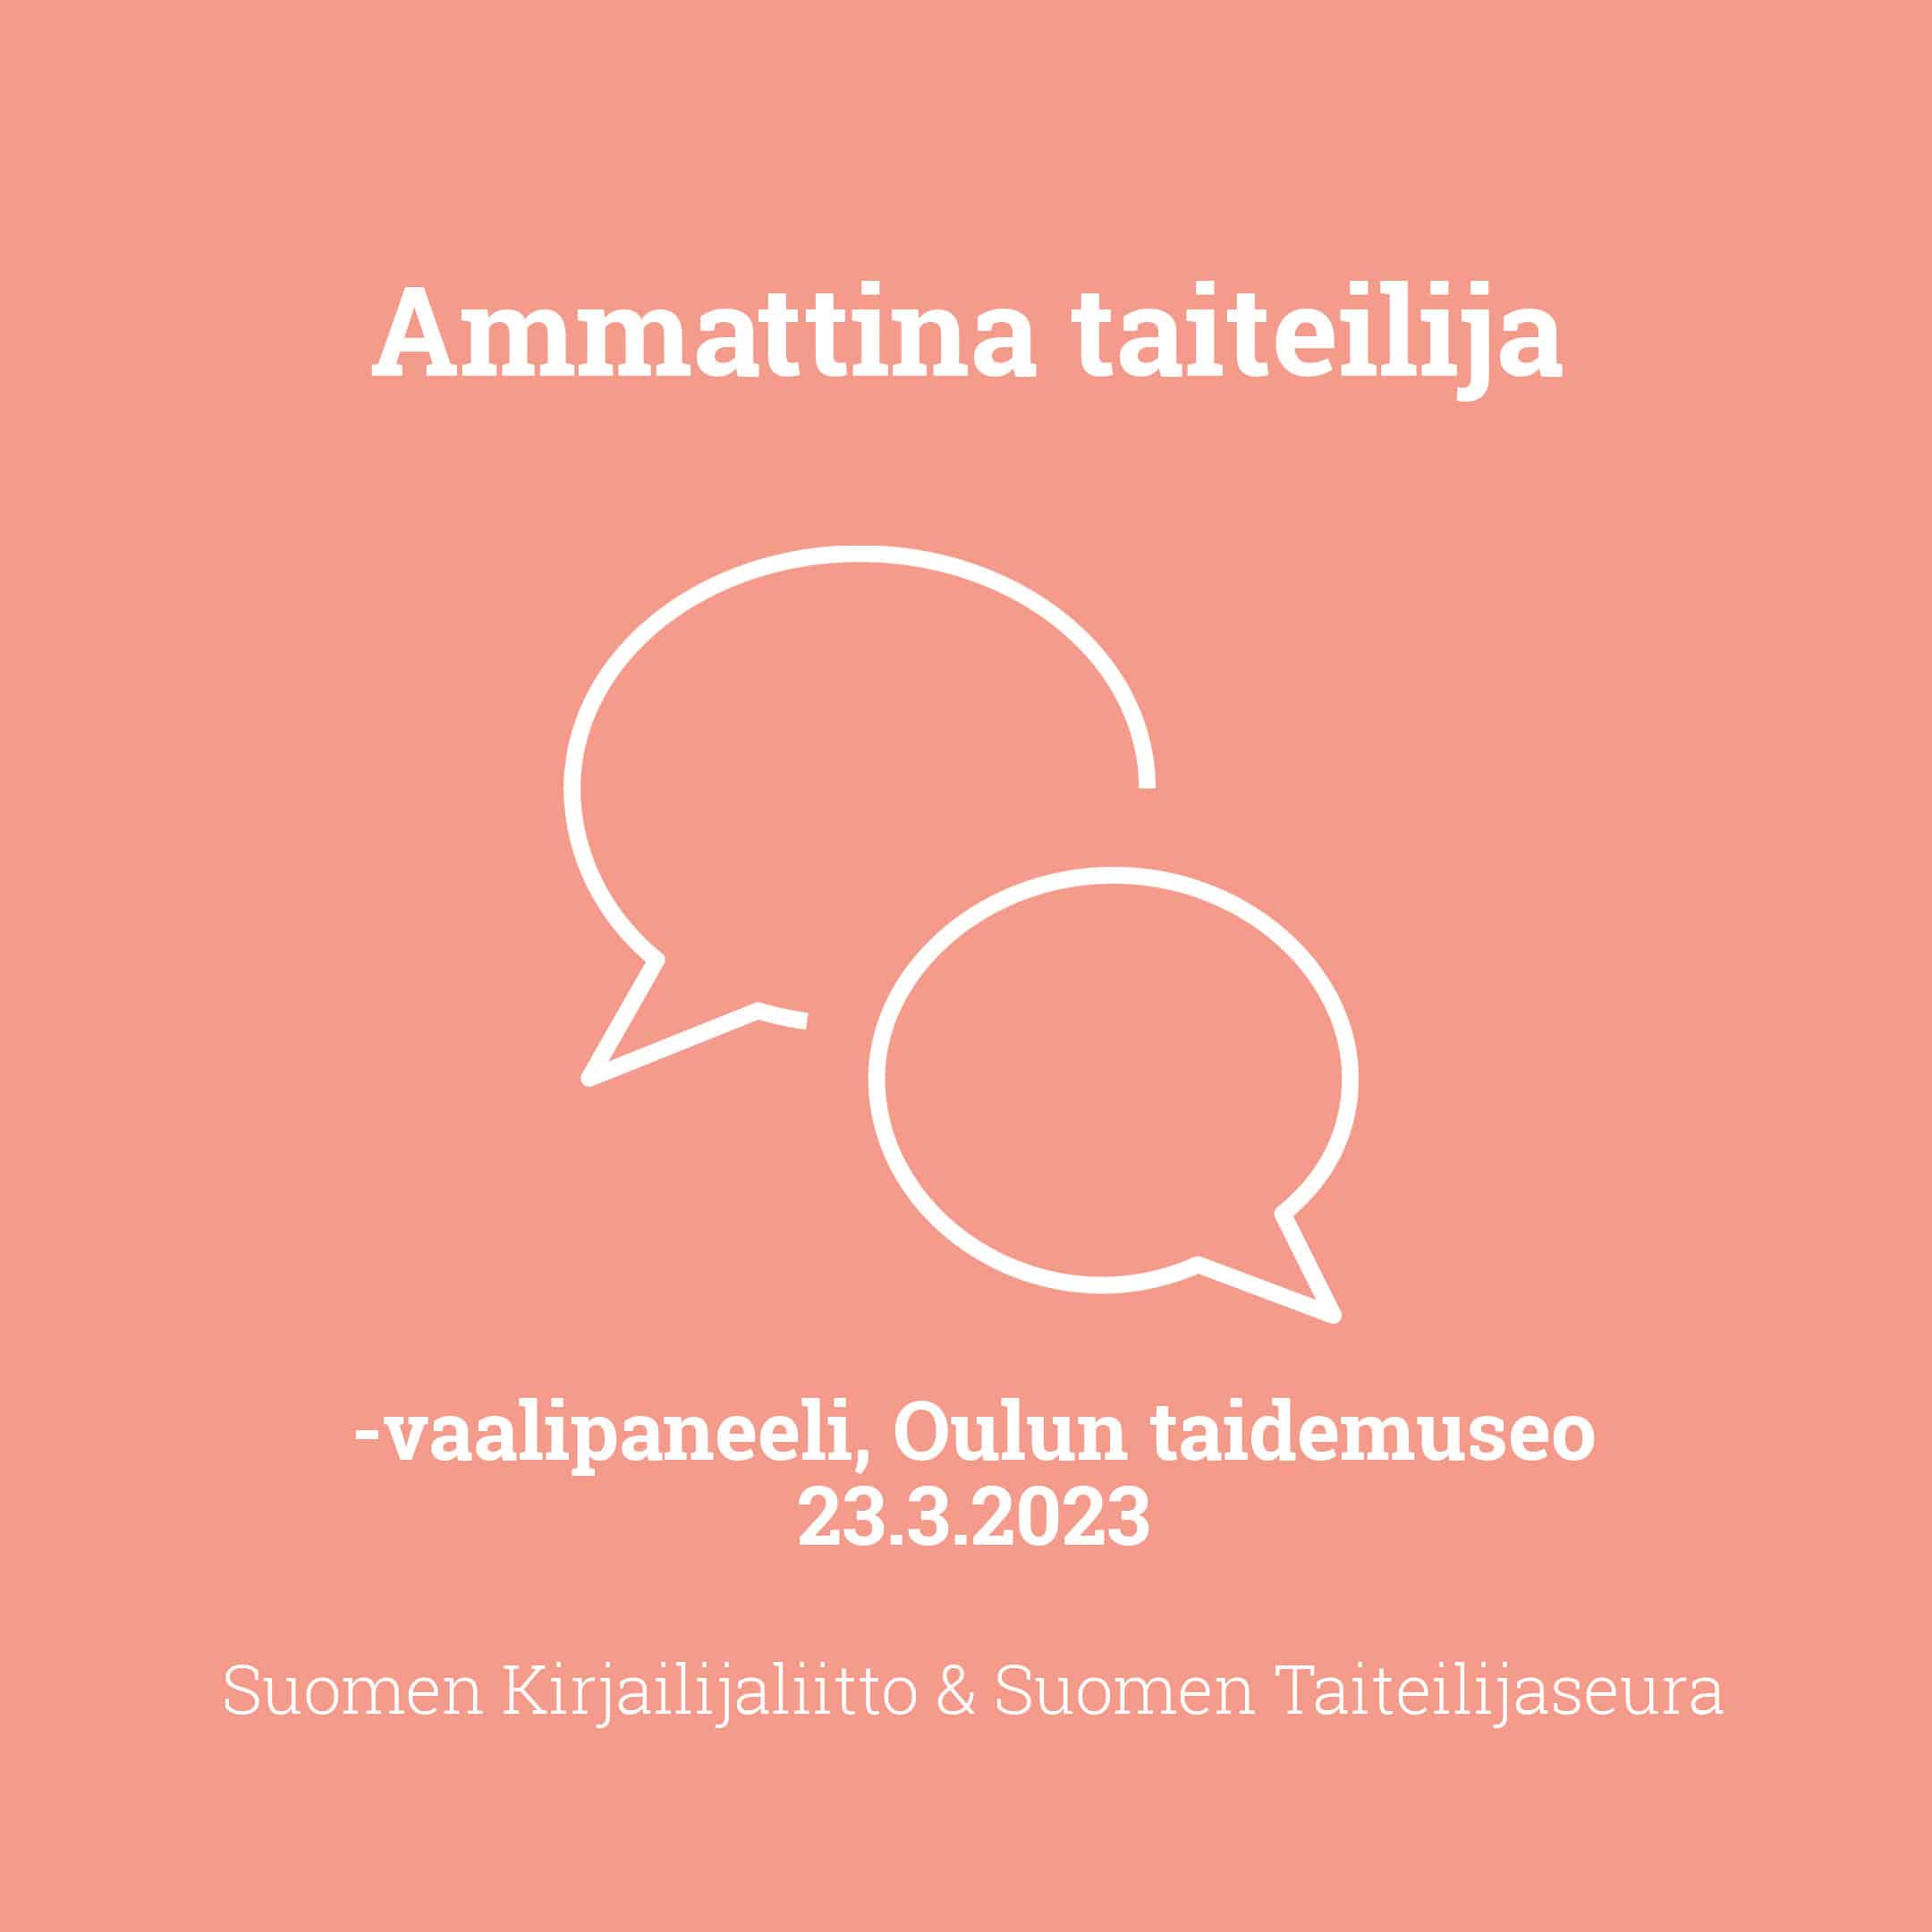 Ammattina taiteilija -vaalipaneeli . Oulussa - Suomen Kirjailijaliitto